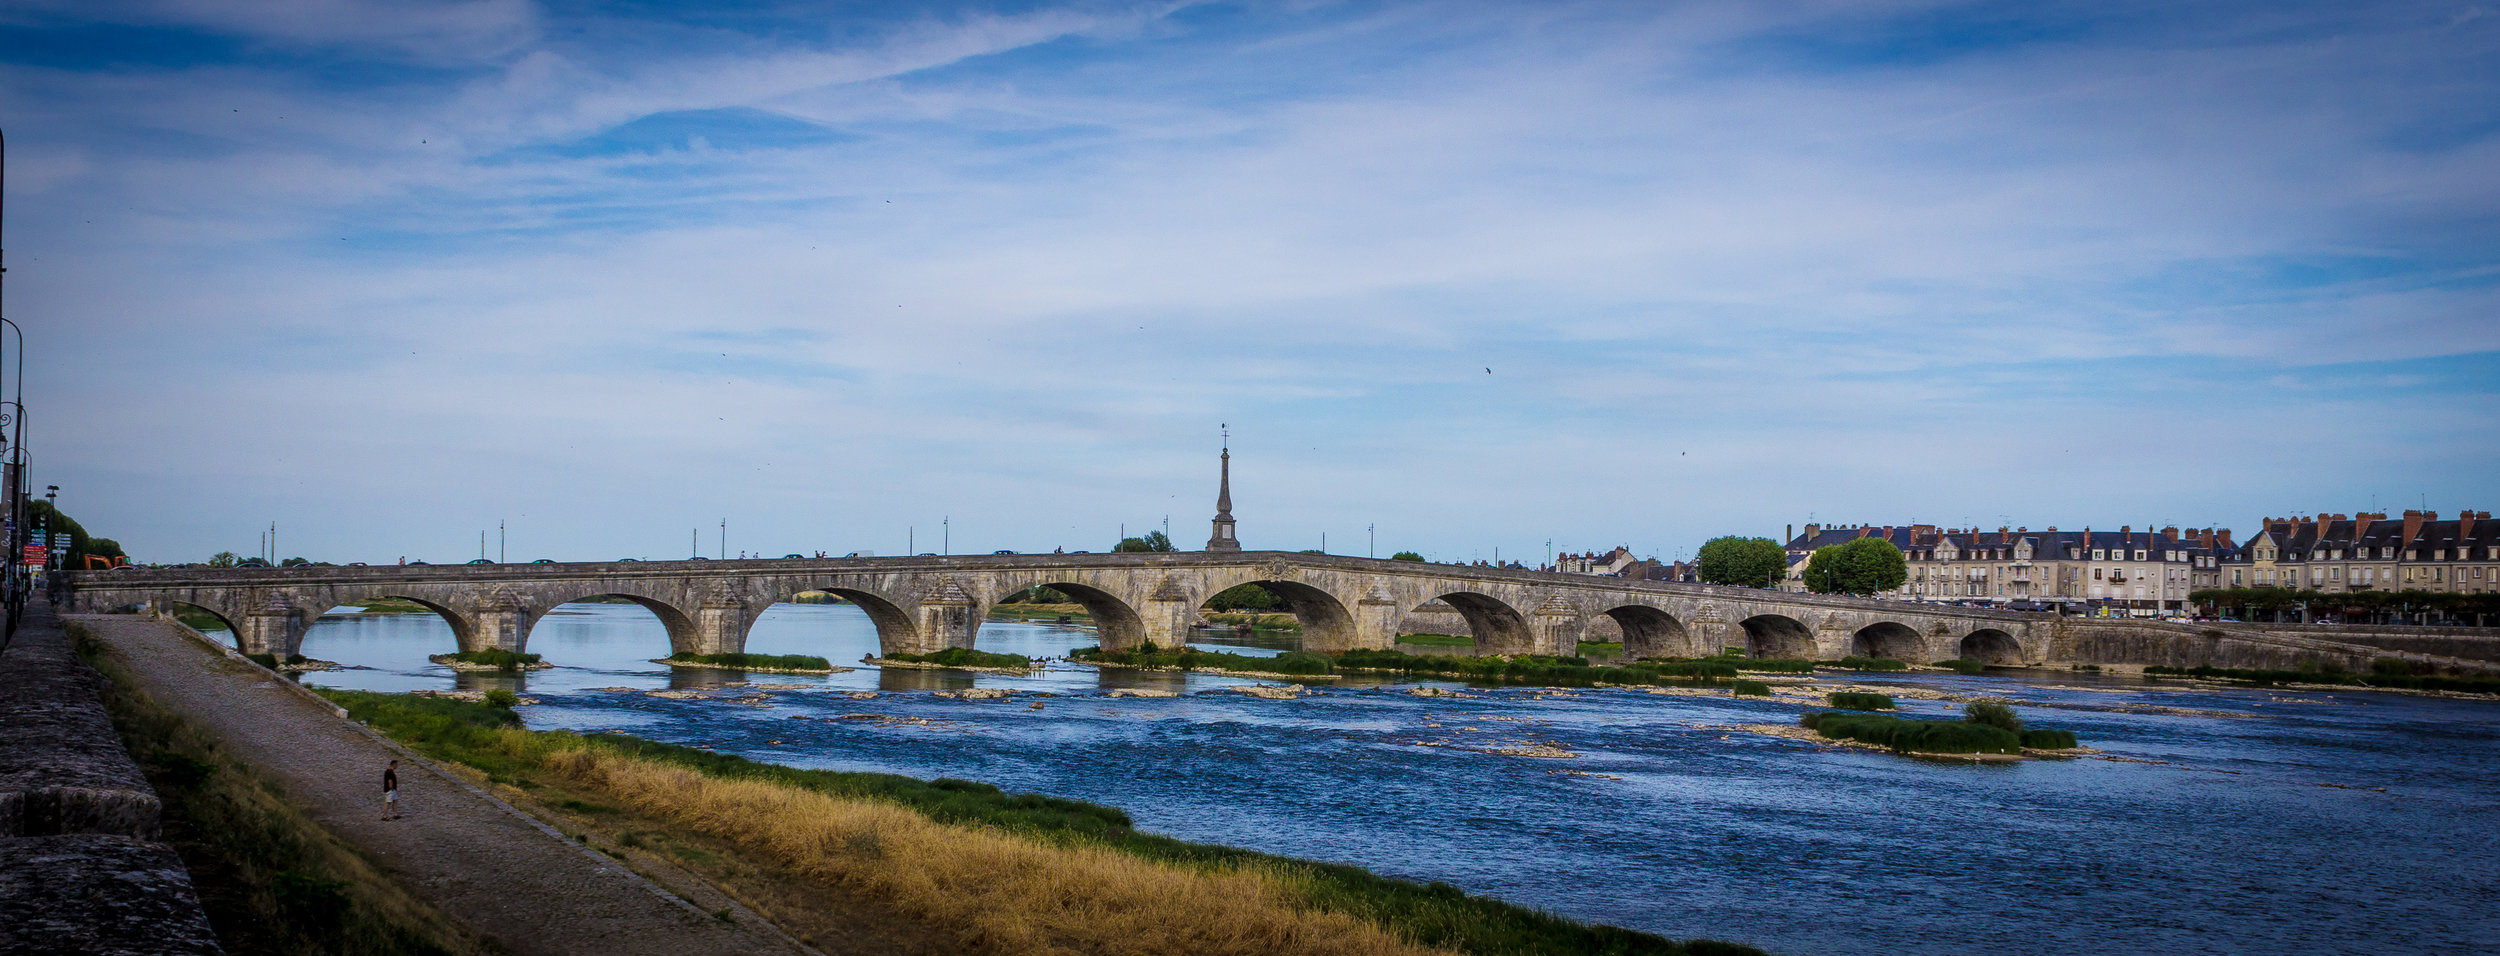 pont sur la Loire.jpg